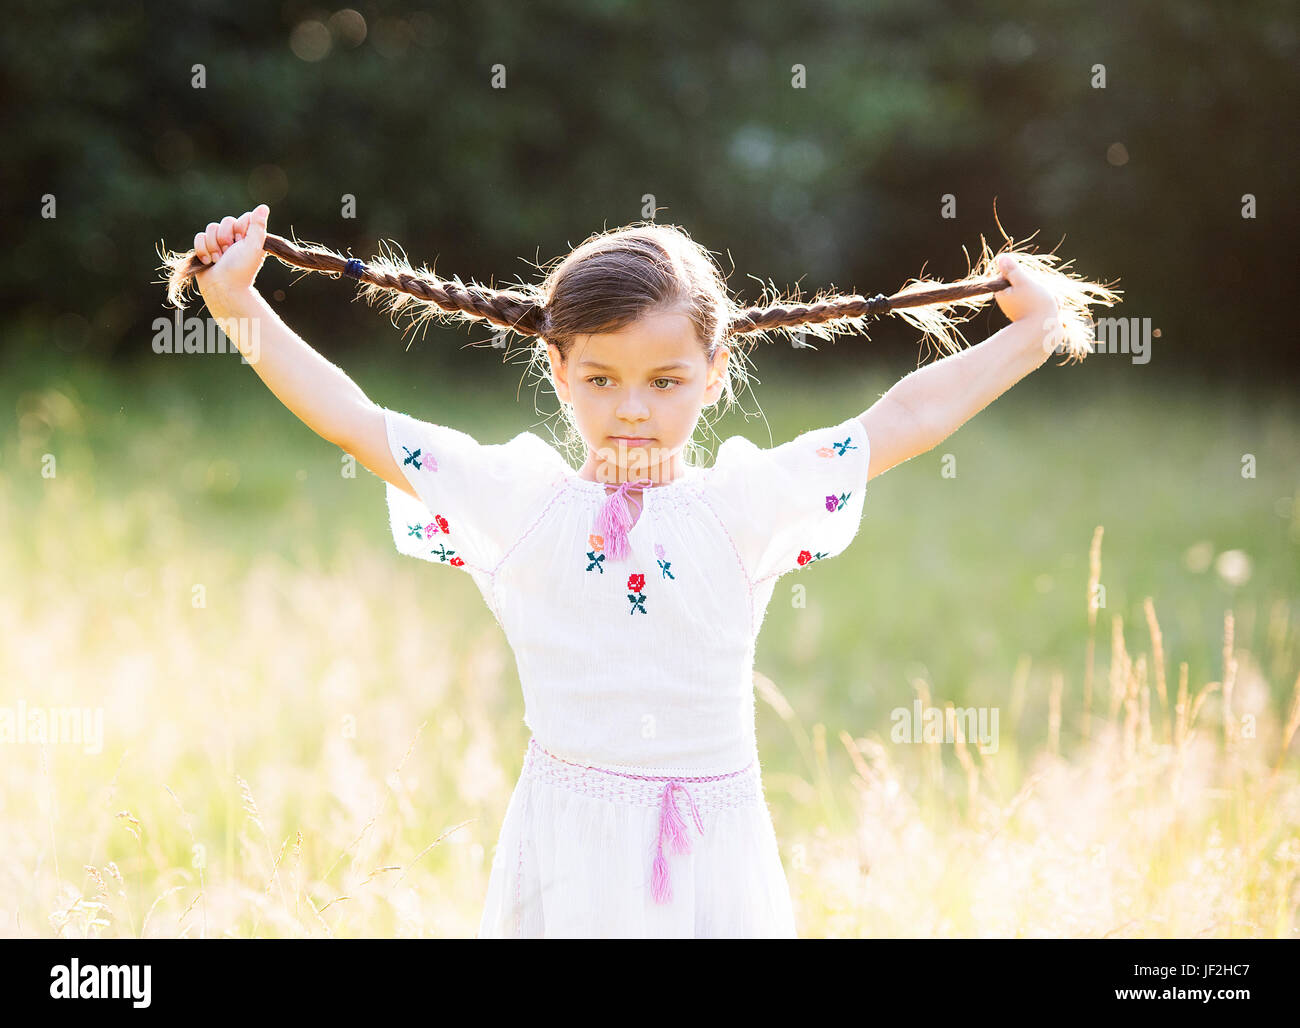 Petite fille heureuse avec les tresses serrées portant blouse roumaine traditionnelle fonctionne en dehors de Banque D'Images